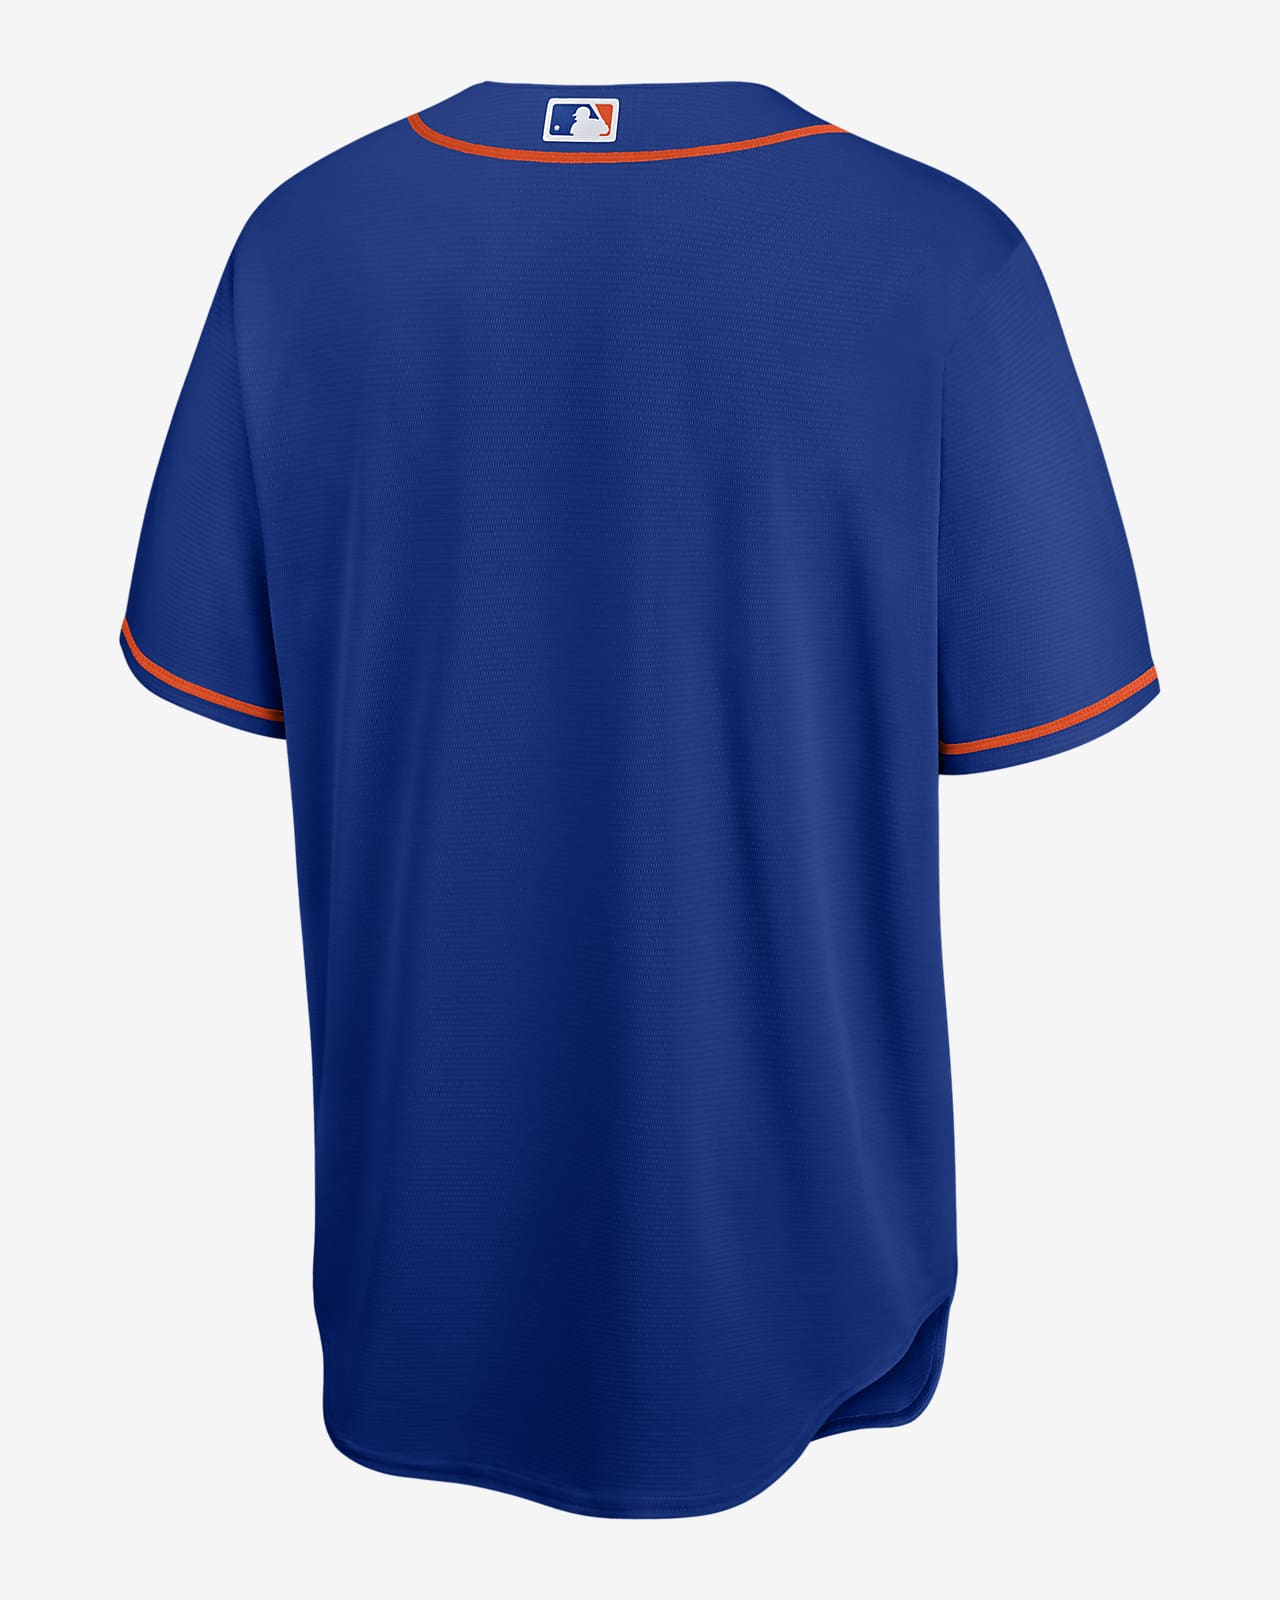 Camiseta de béisbol réplica para hombre MLB New York Mets.